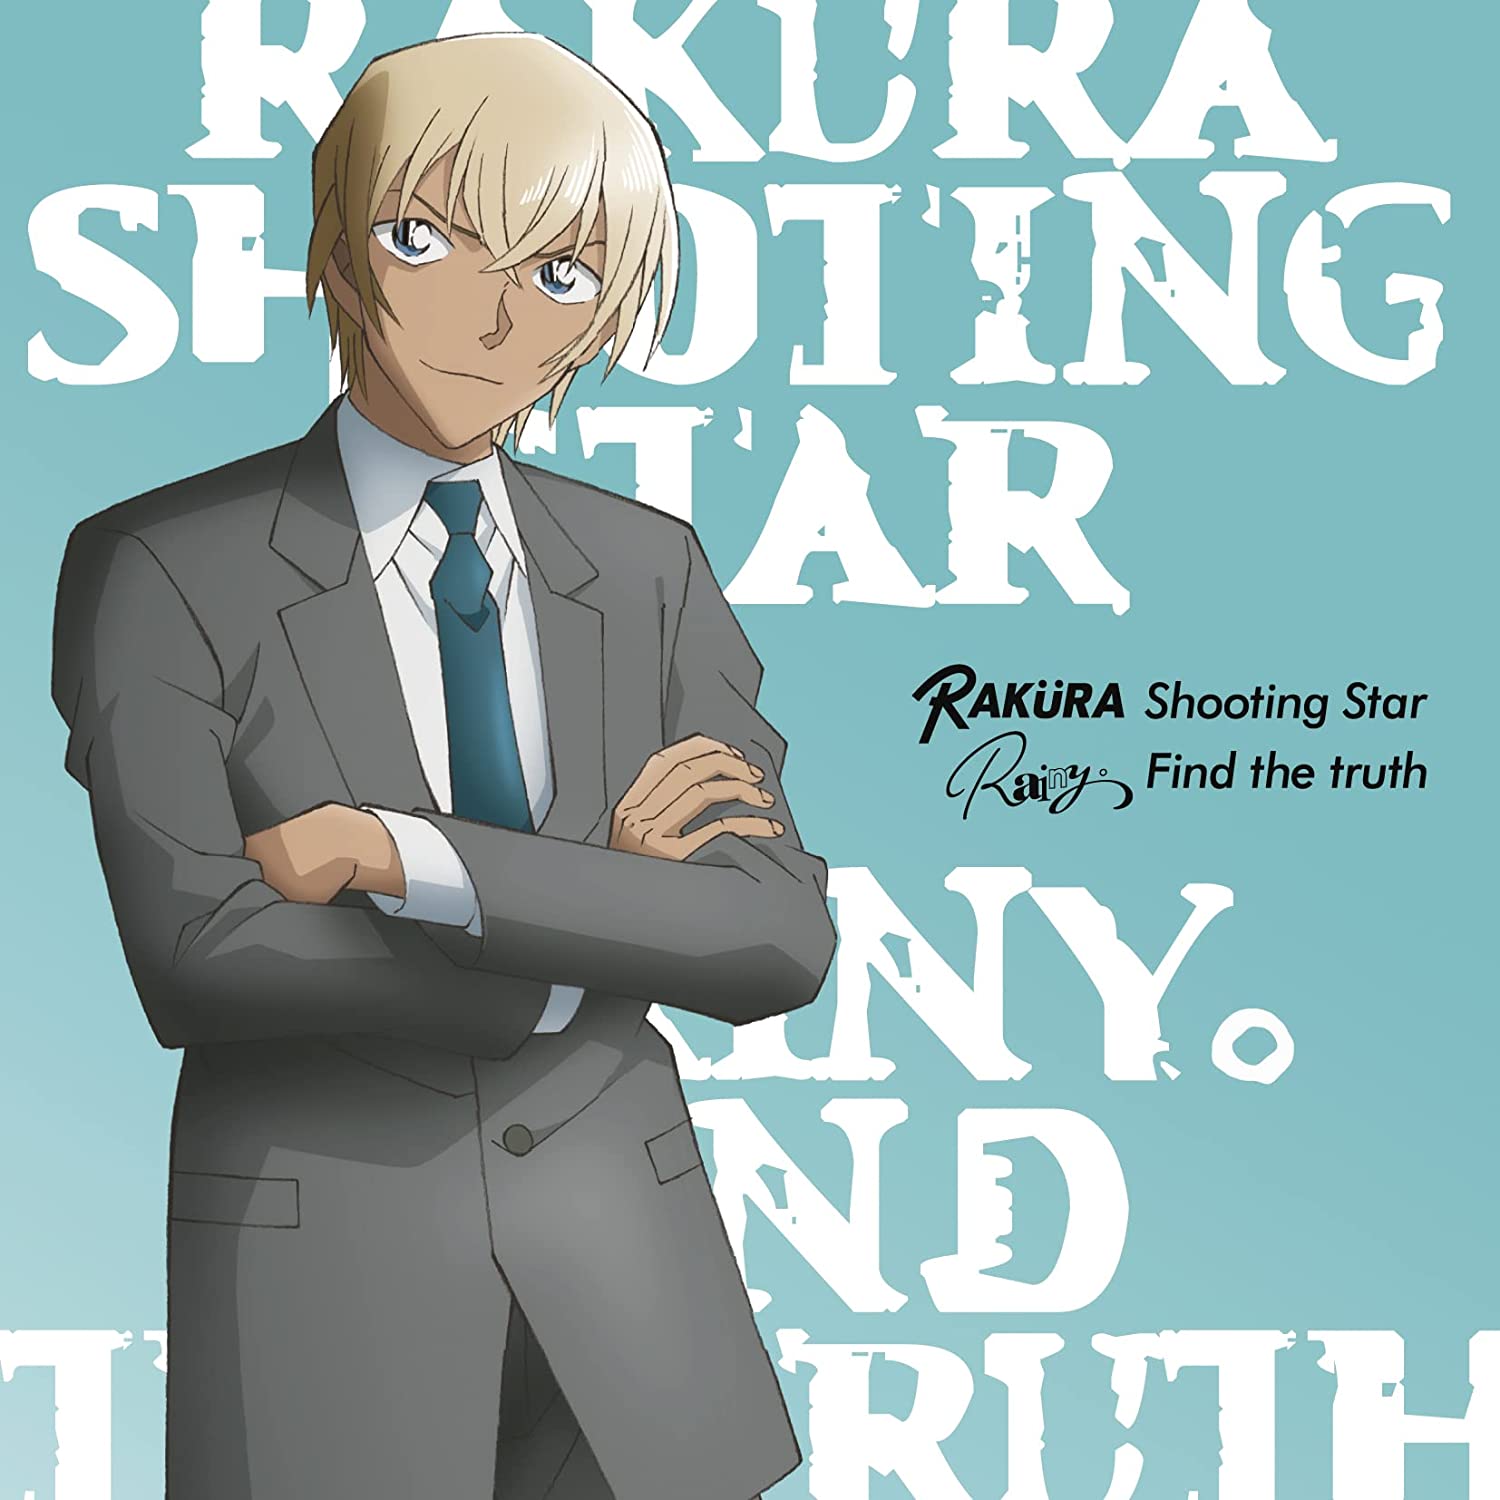 [중고] 「Shooting Star / Find the truth」 (ゼロの日常盤A) 安室透描き下ろしオリジナルアクリルスタンドA(サイズ130×147mm)付